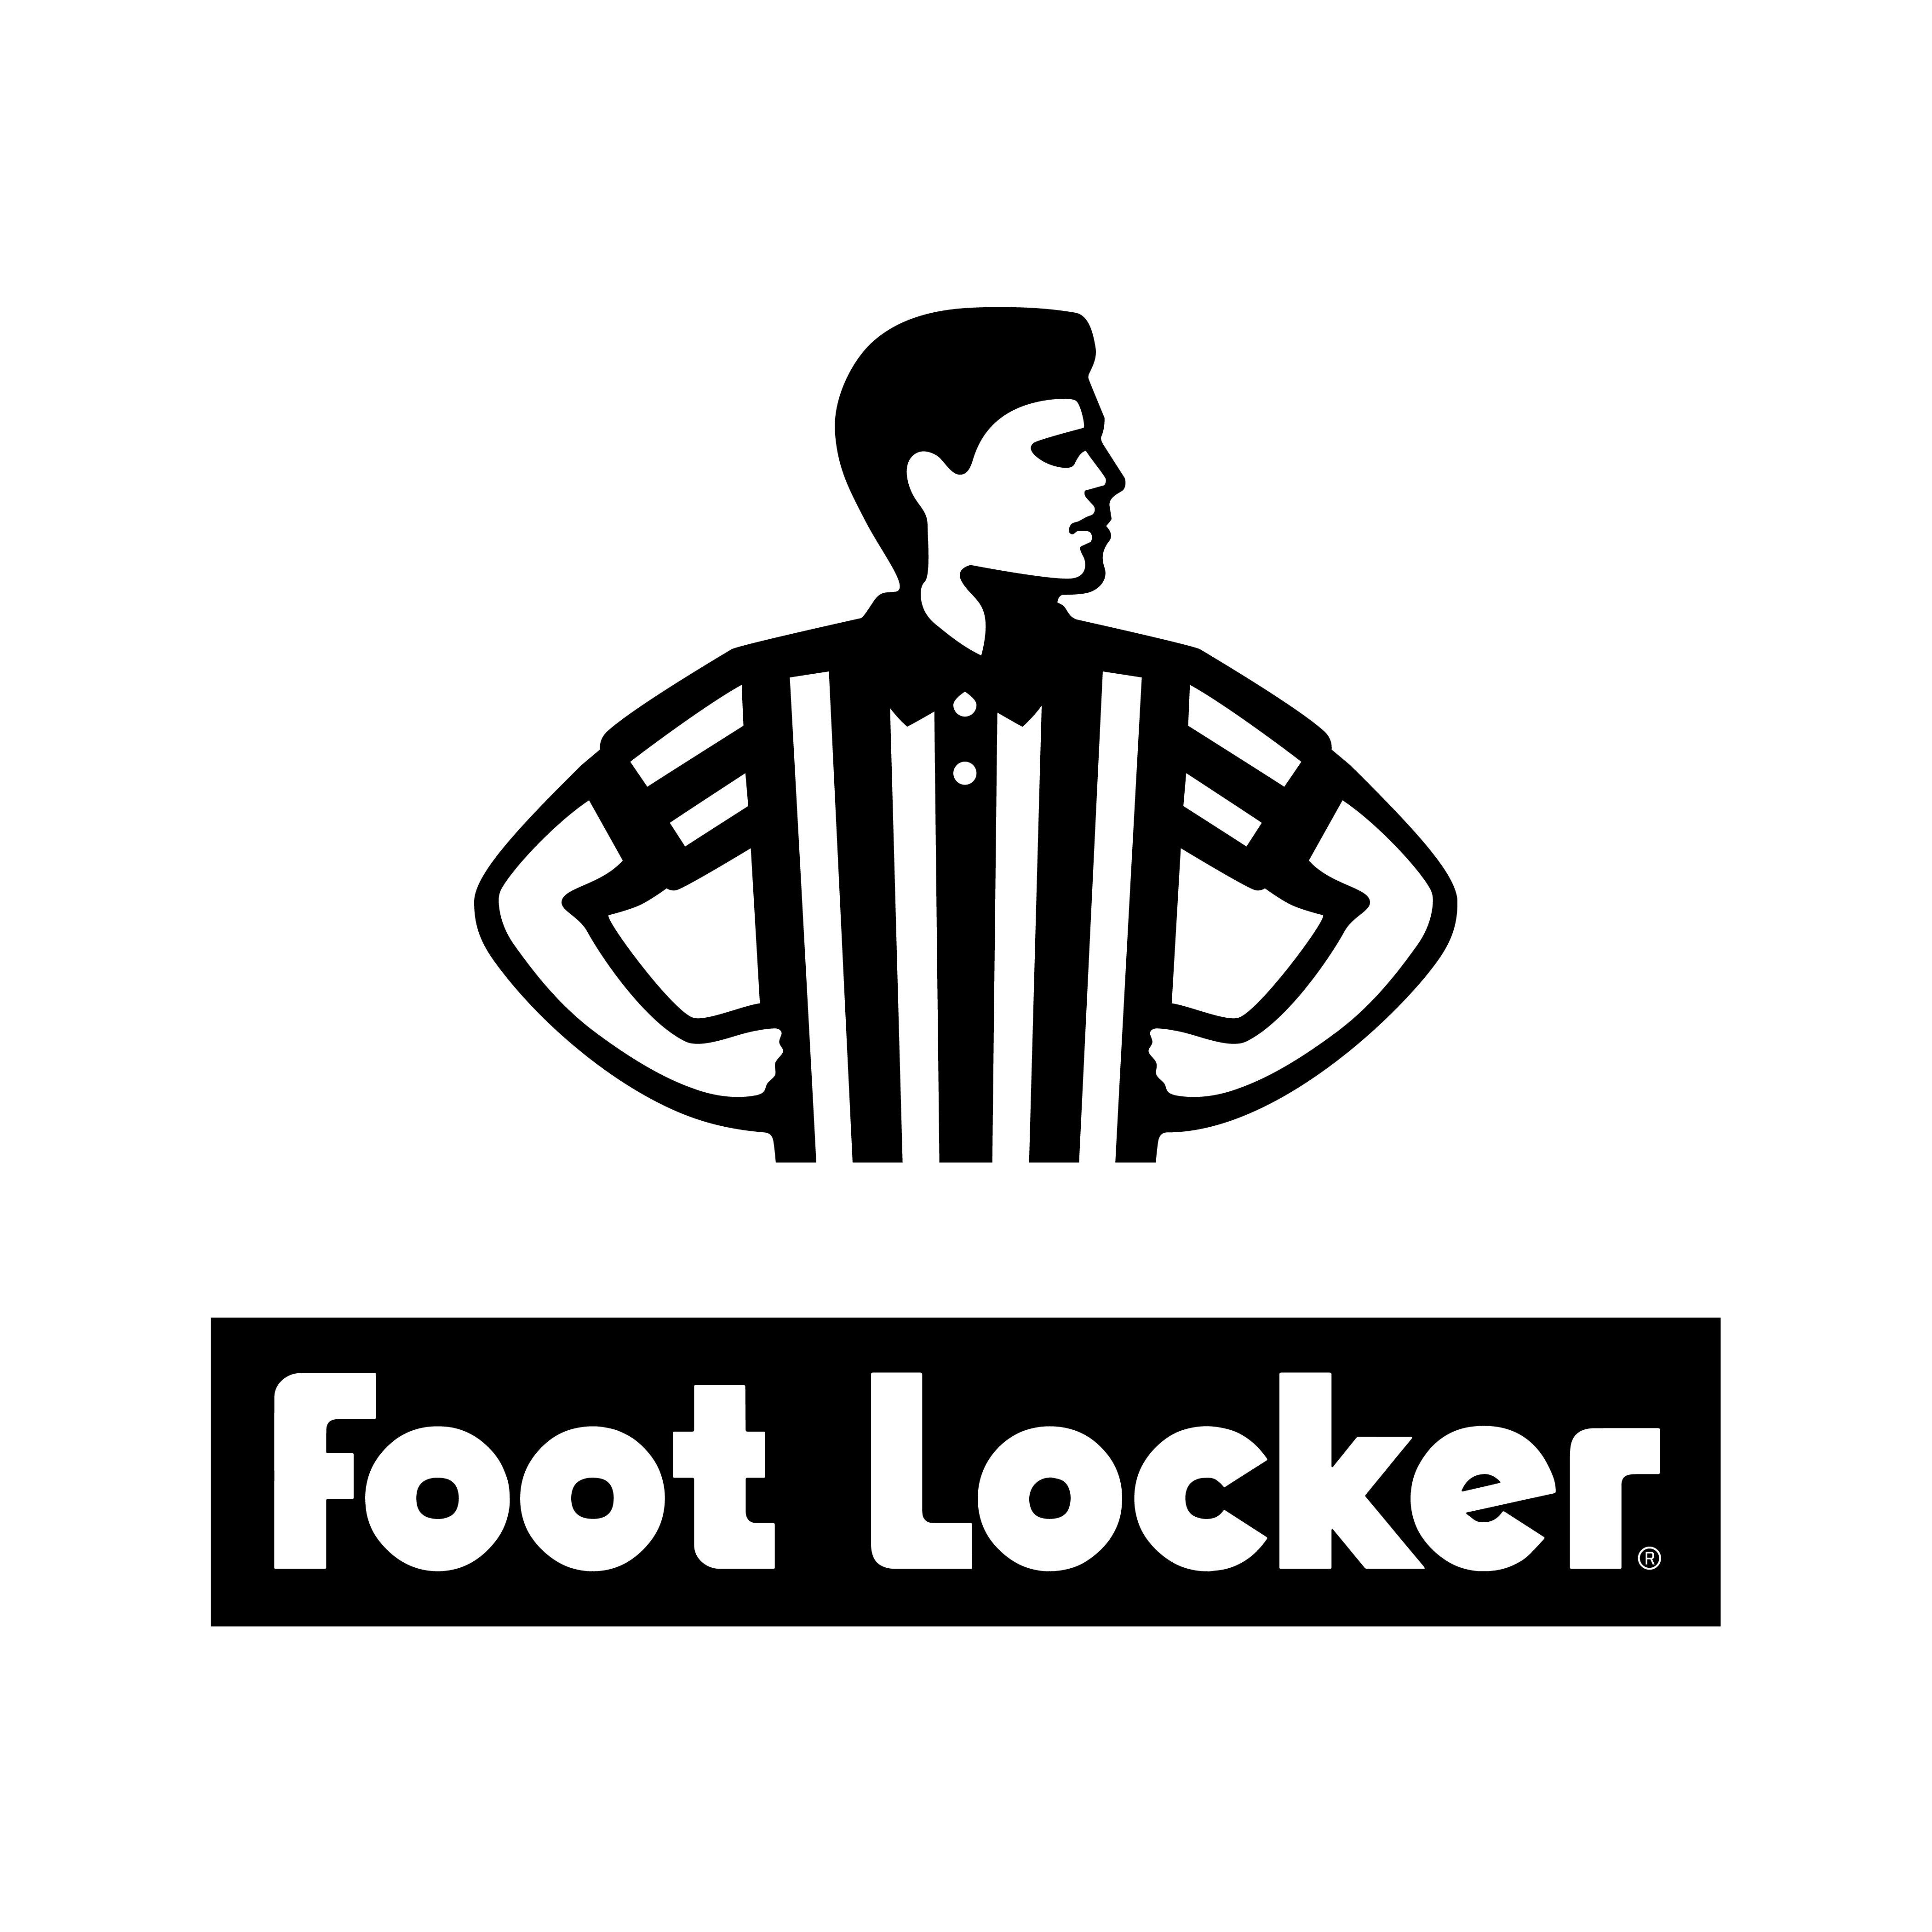 1 FootLocker